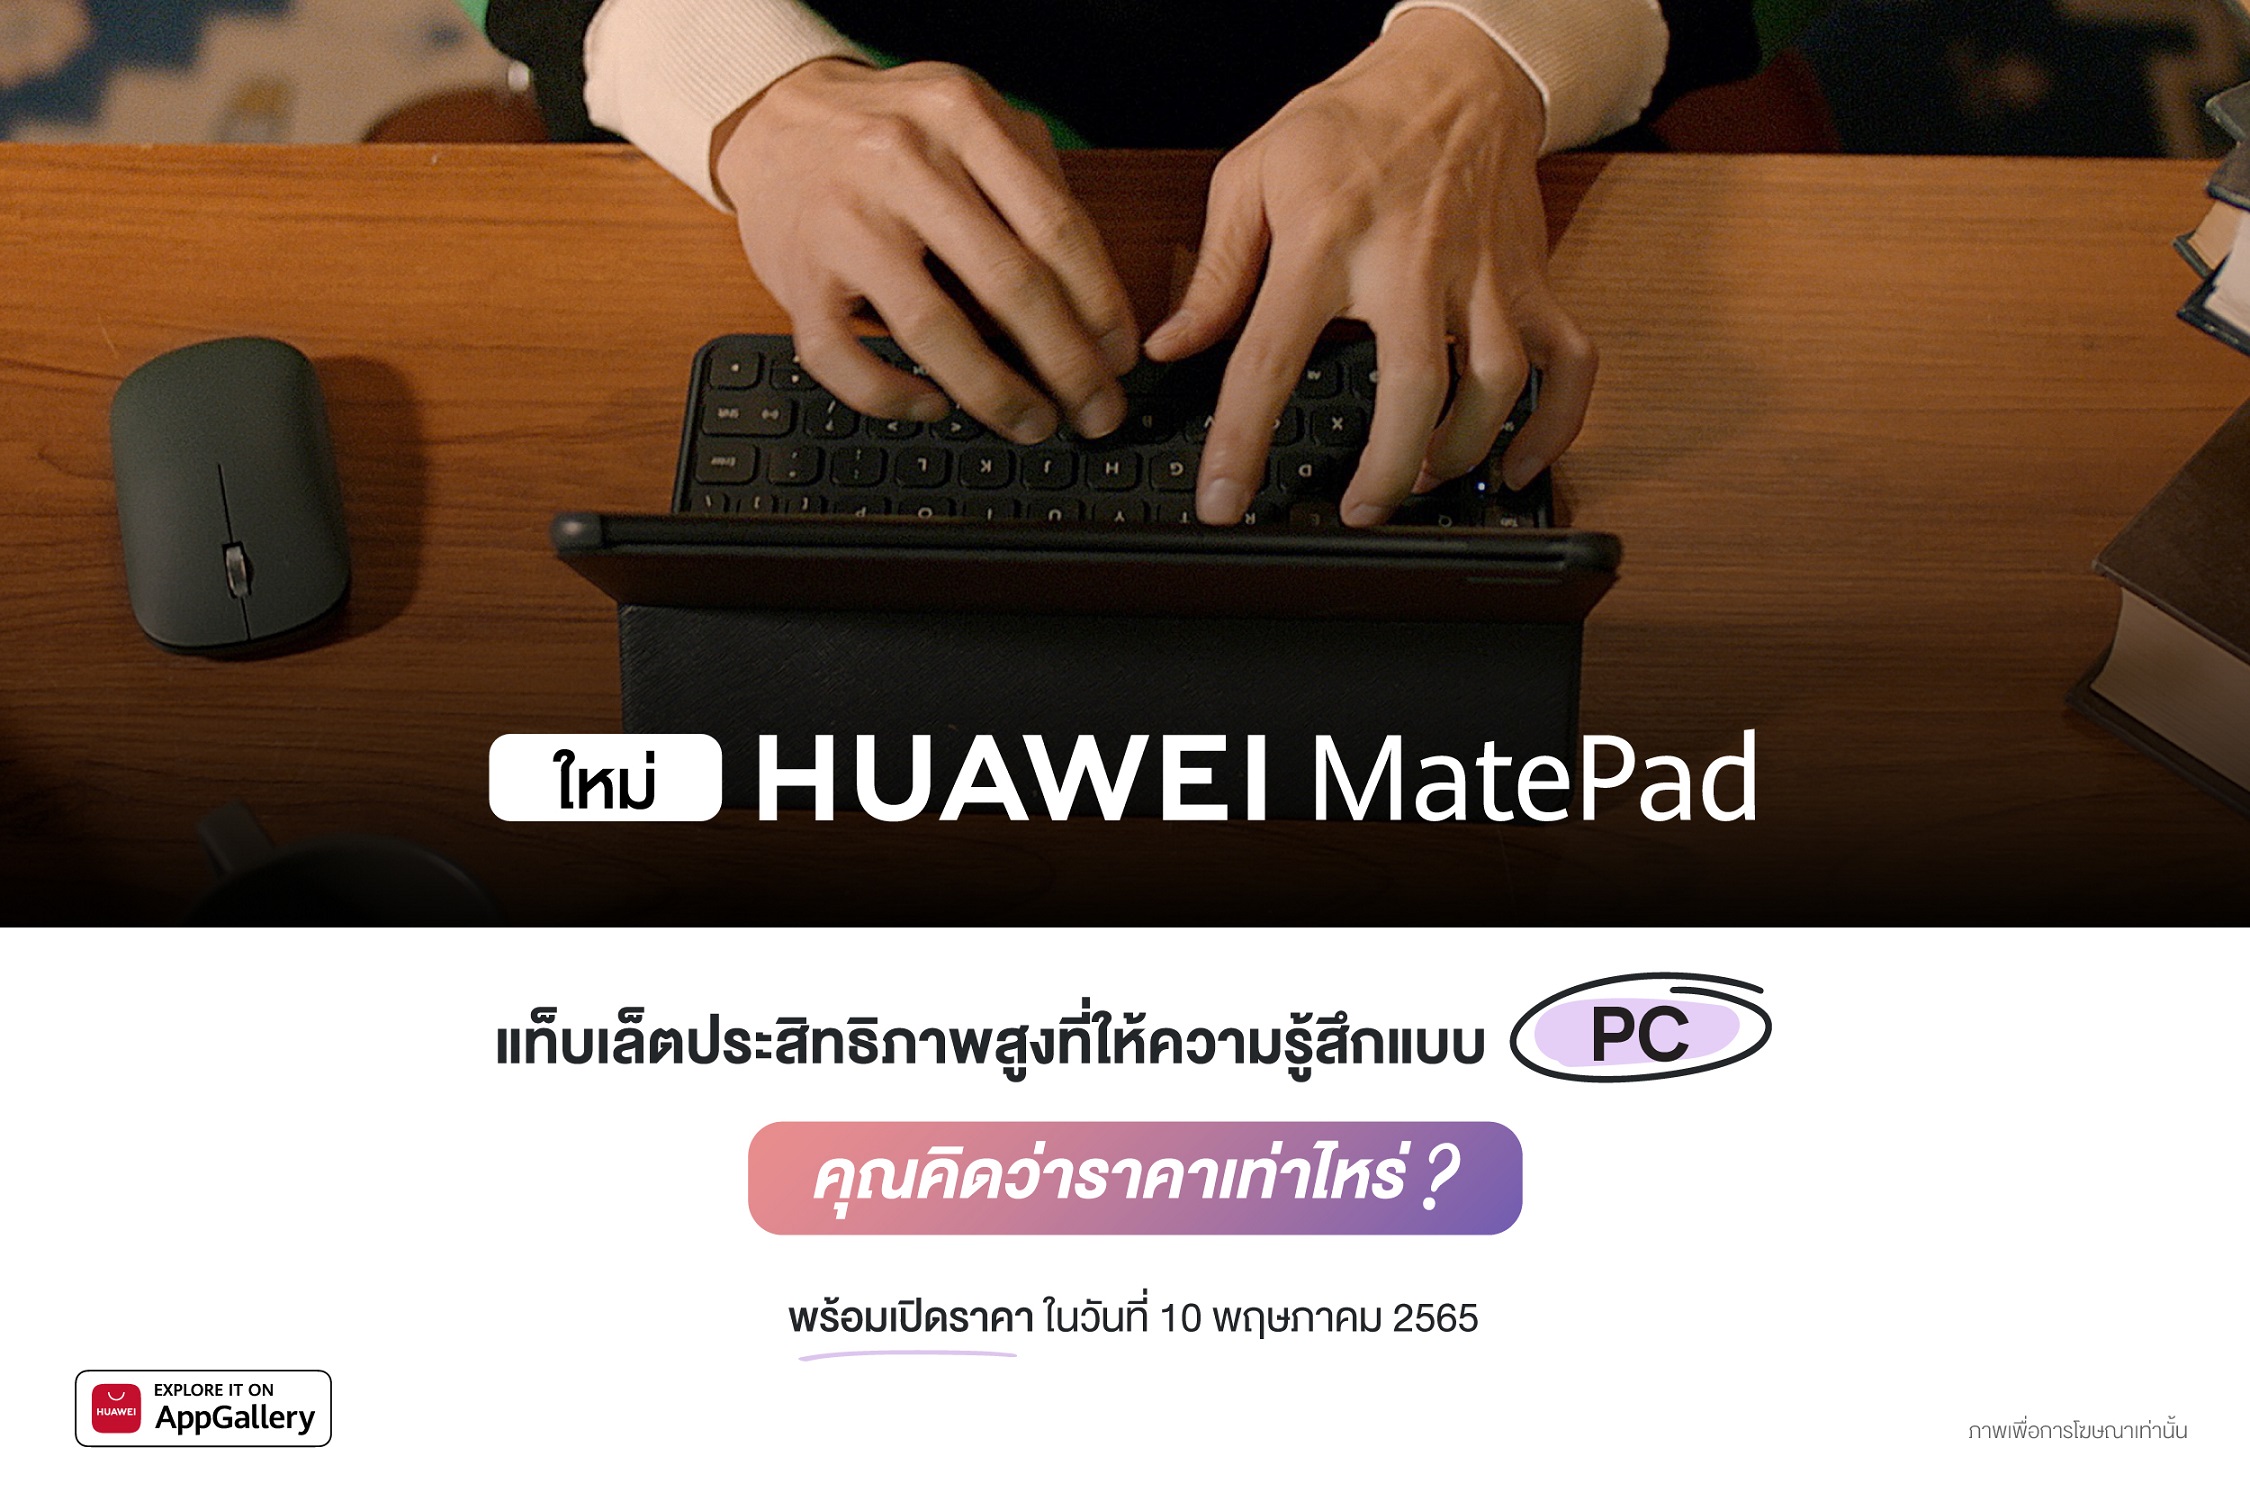 เตรียมพบกับ HUAWEI MatePad 10.4-inch 2022 ประสิทธิภาพจัดเต็มเพื่อการใช้งานเสมือนแล็ปท็อป พร้อมเปิดตัว HUAWEI Smart Office คอนเซปต์โซลูชันใหม่ของการทำงานแบบอัจฉริยะ 10 พฤษภาคม 2565 นี้